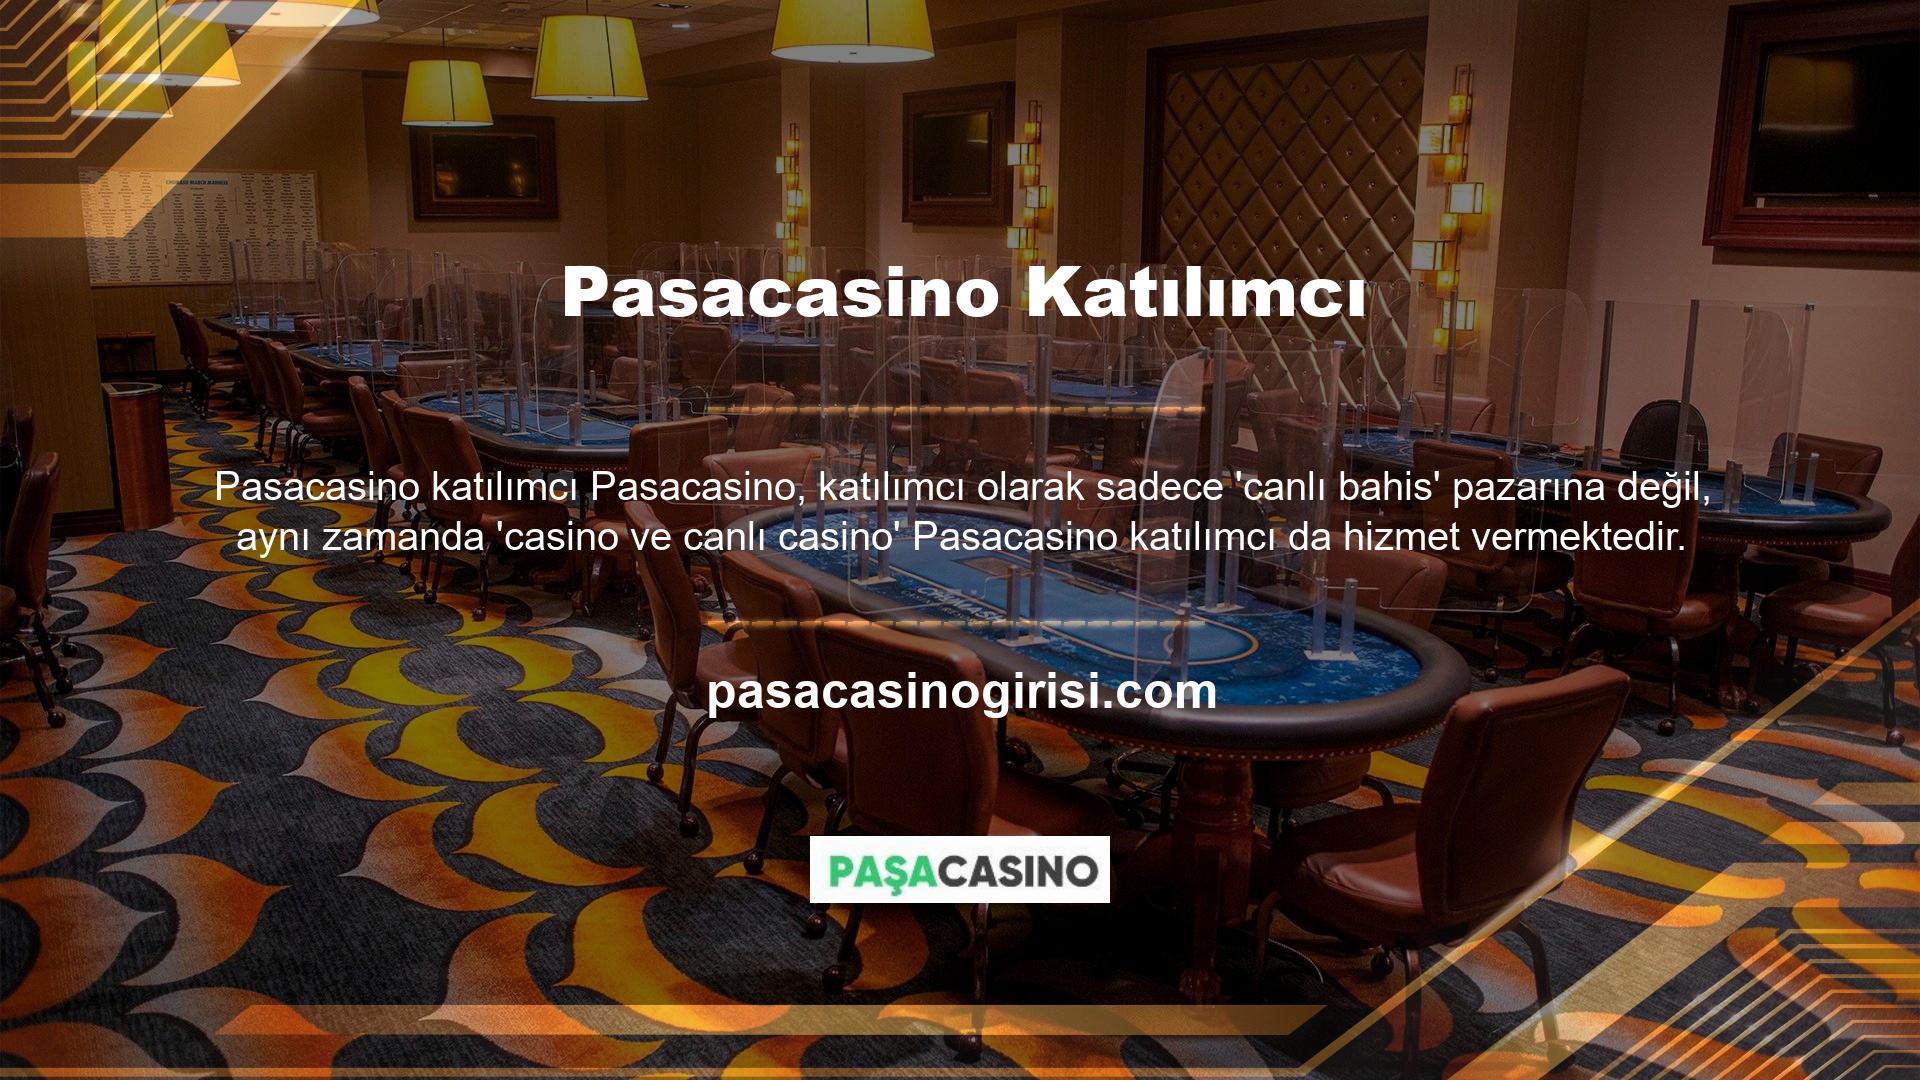 Aslında, casino pazarındaki çok yüksek para çekme limitleri, birçok kullanıcının Pasacasino kayıt sayfasını tercih etme sebeplerinden biridir